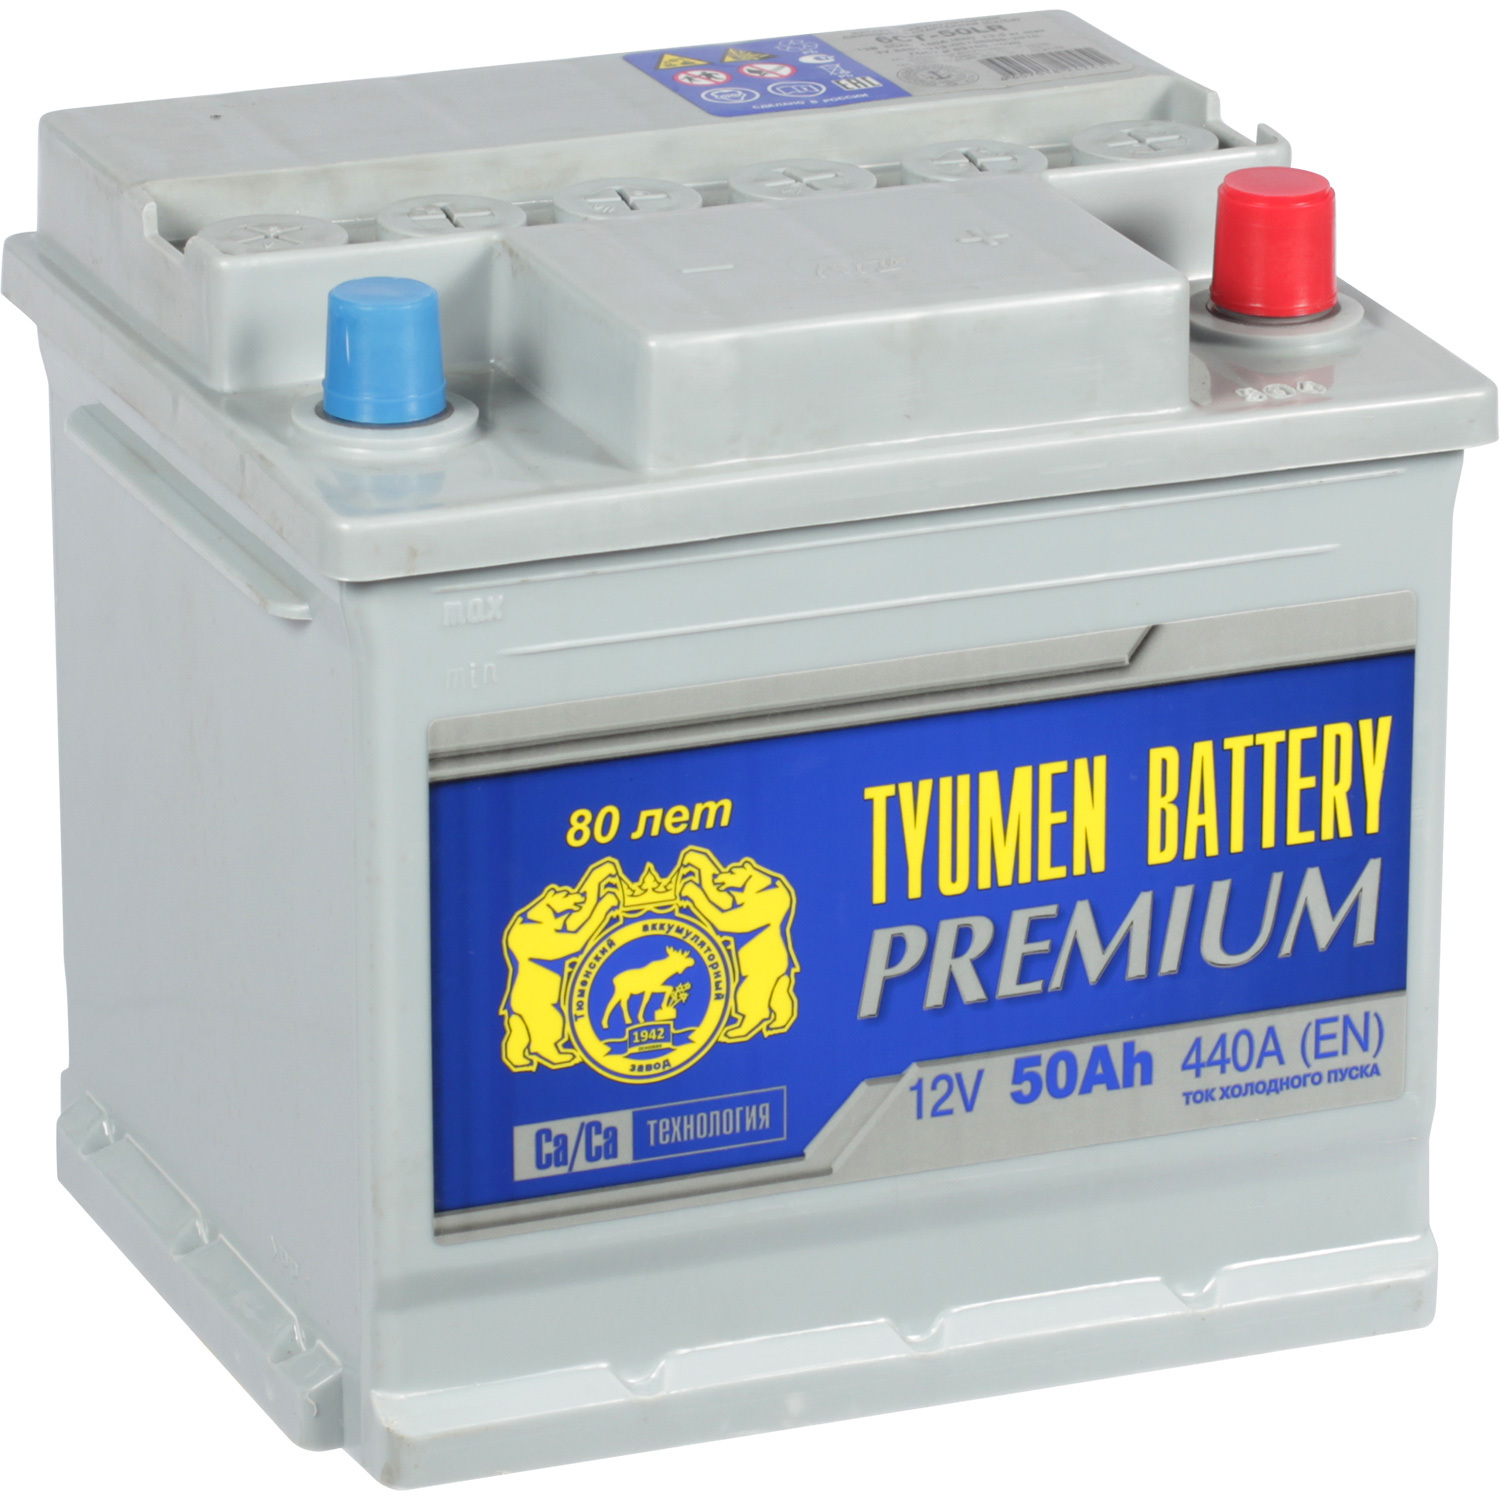 Tyumen Battery Автомобильный аккумулятор Tyumen Battery Premium 50 Ач обратная полярность L1 tyumen battery автомобильный аккумулятор tyumen battery asia 40 ач обратная полярность b19l